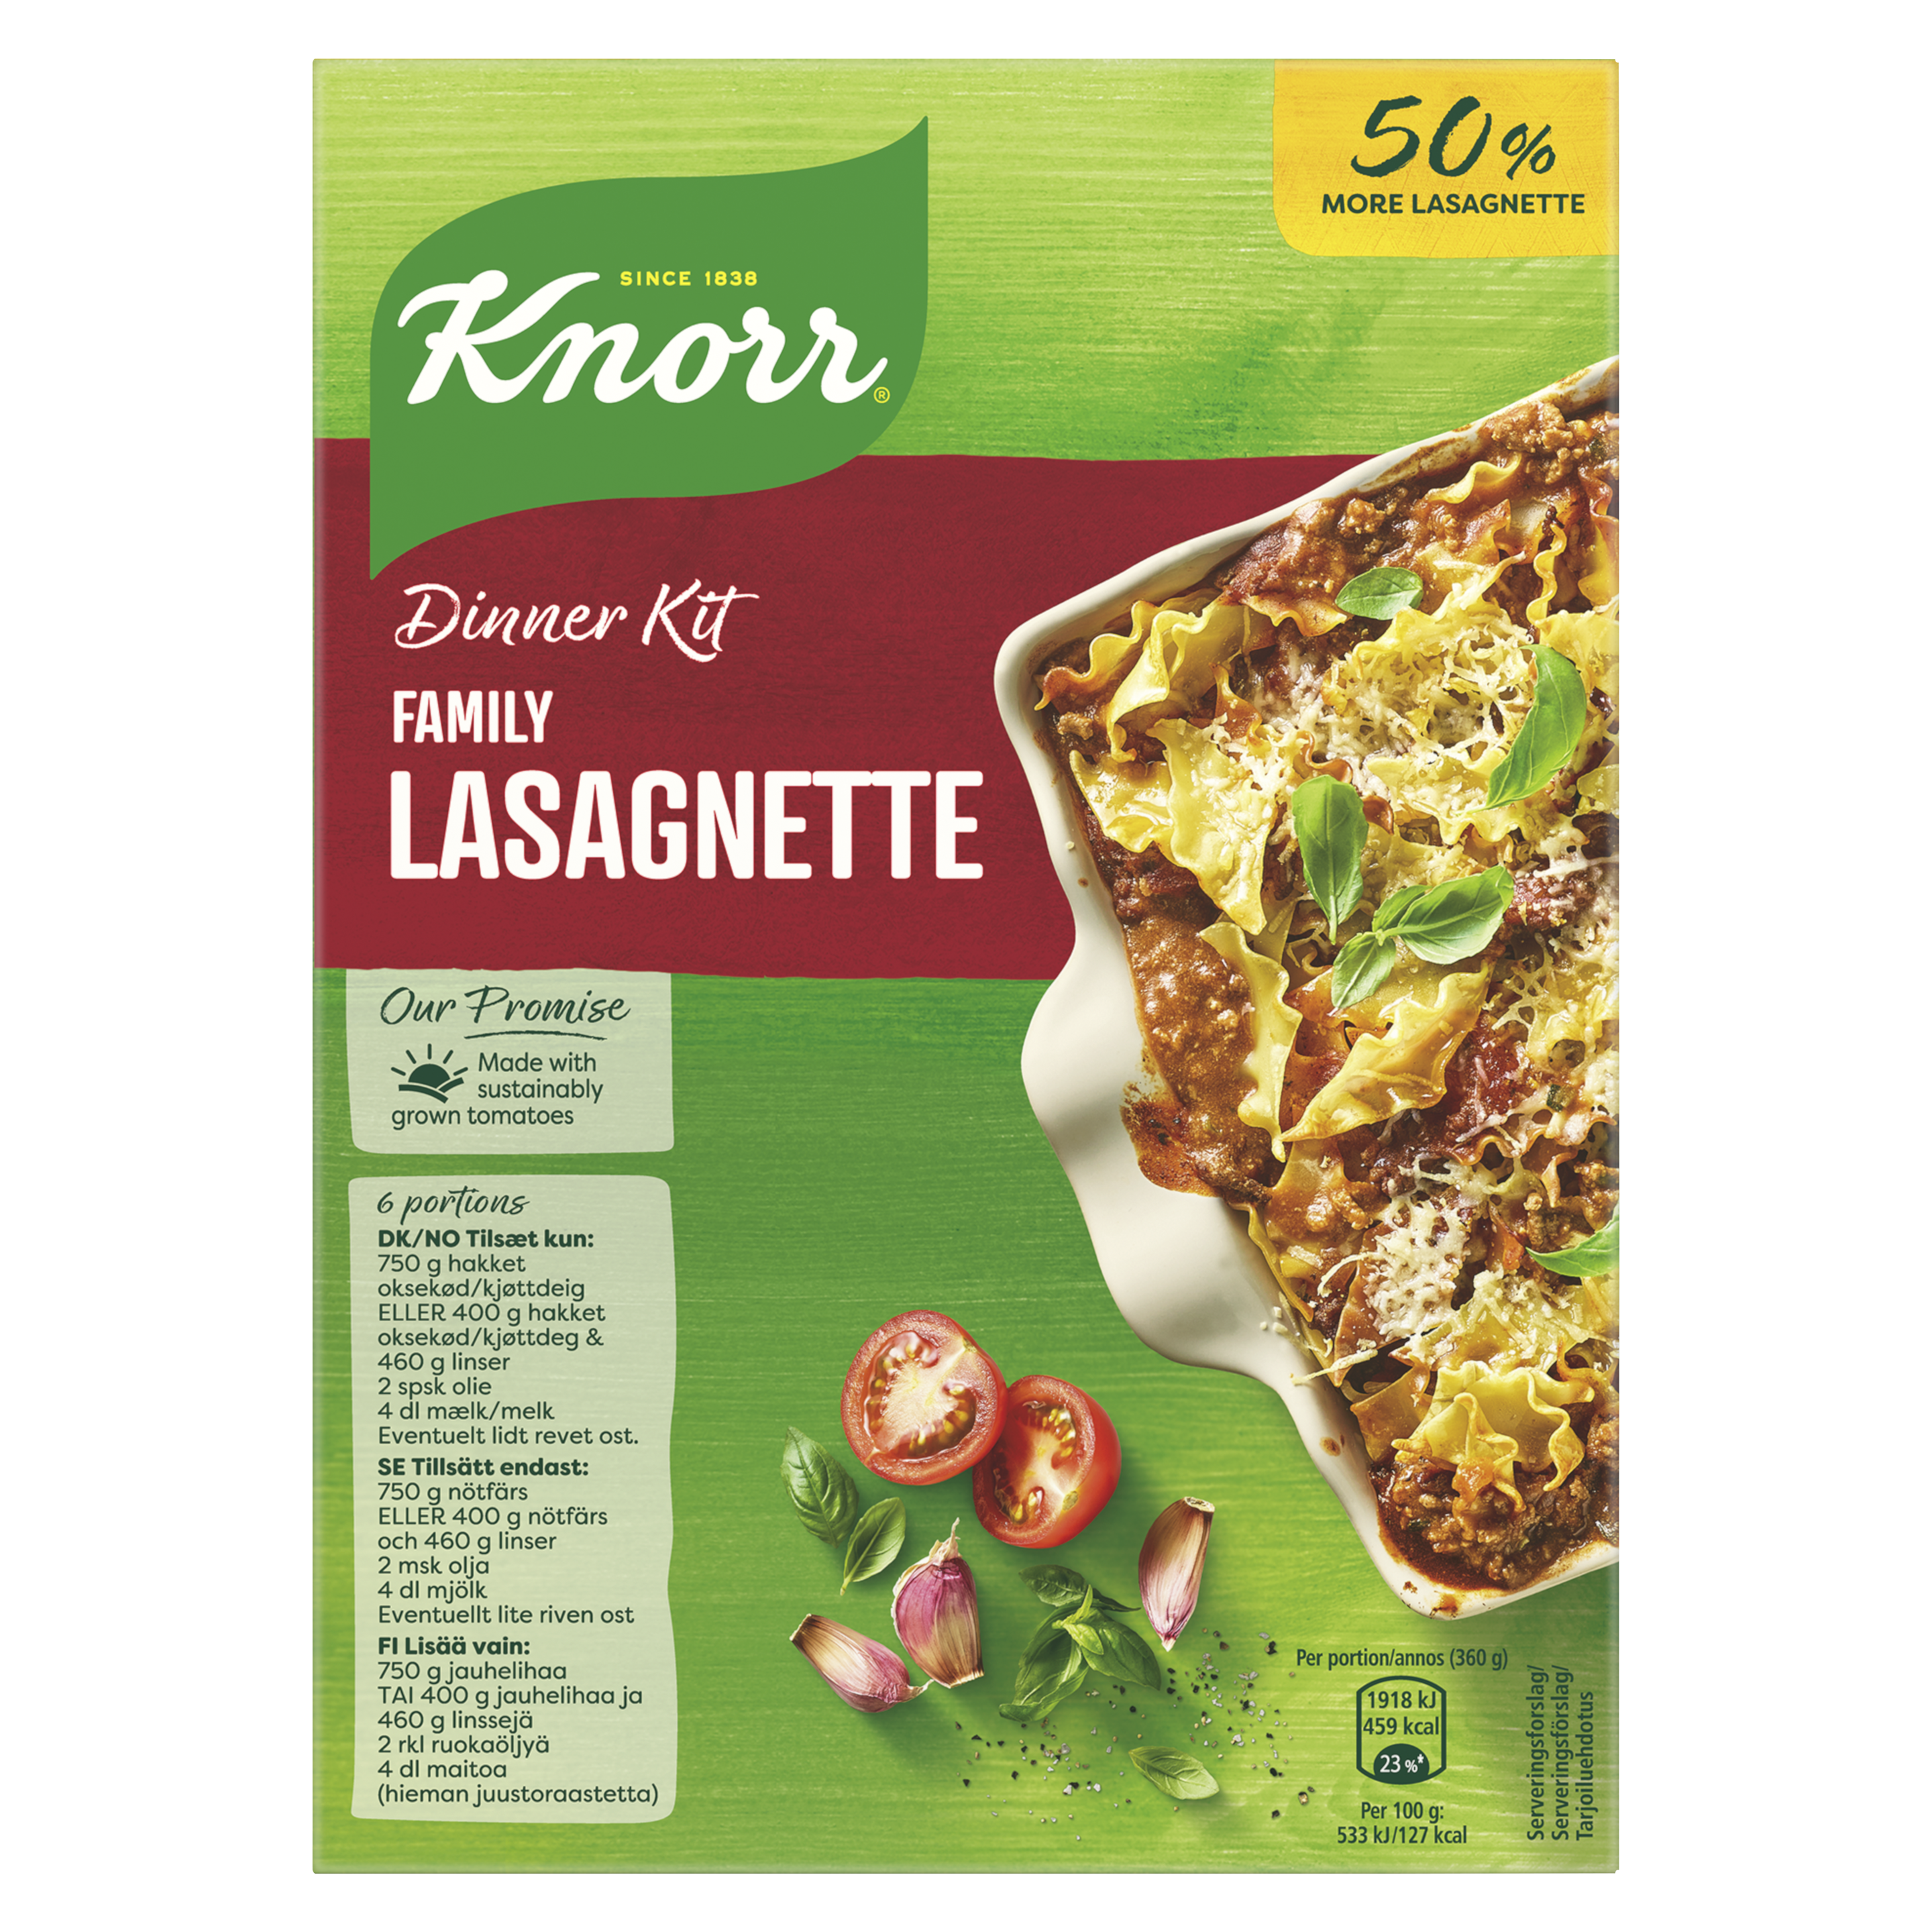 Dinner Kit Family Lasagnette